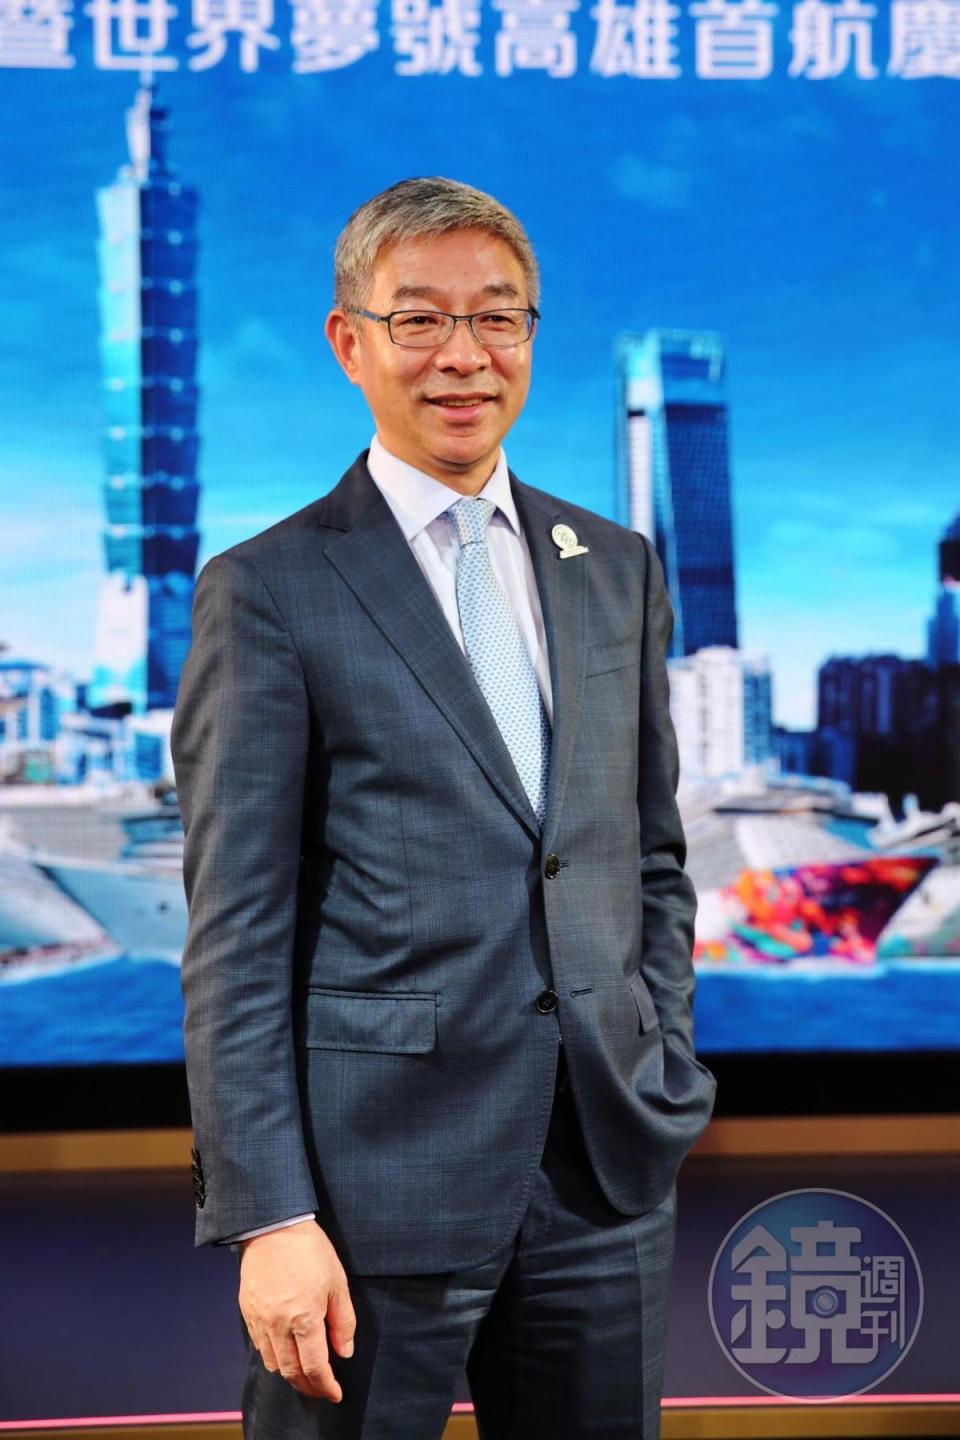 雲頂郵輪集團總裁朱福明看好台灣郵輪市場潛力。